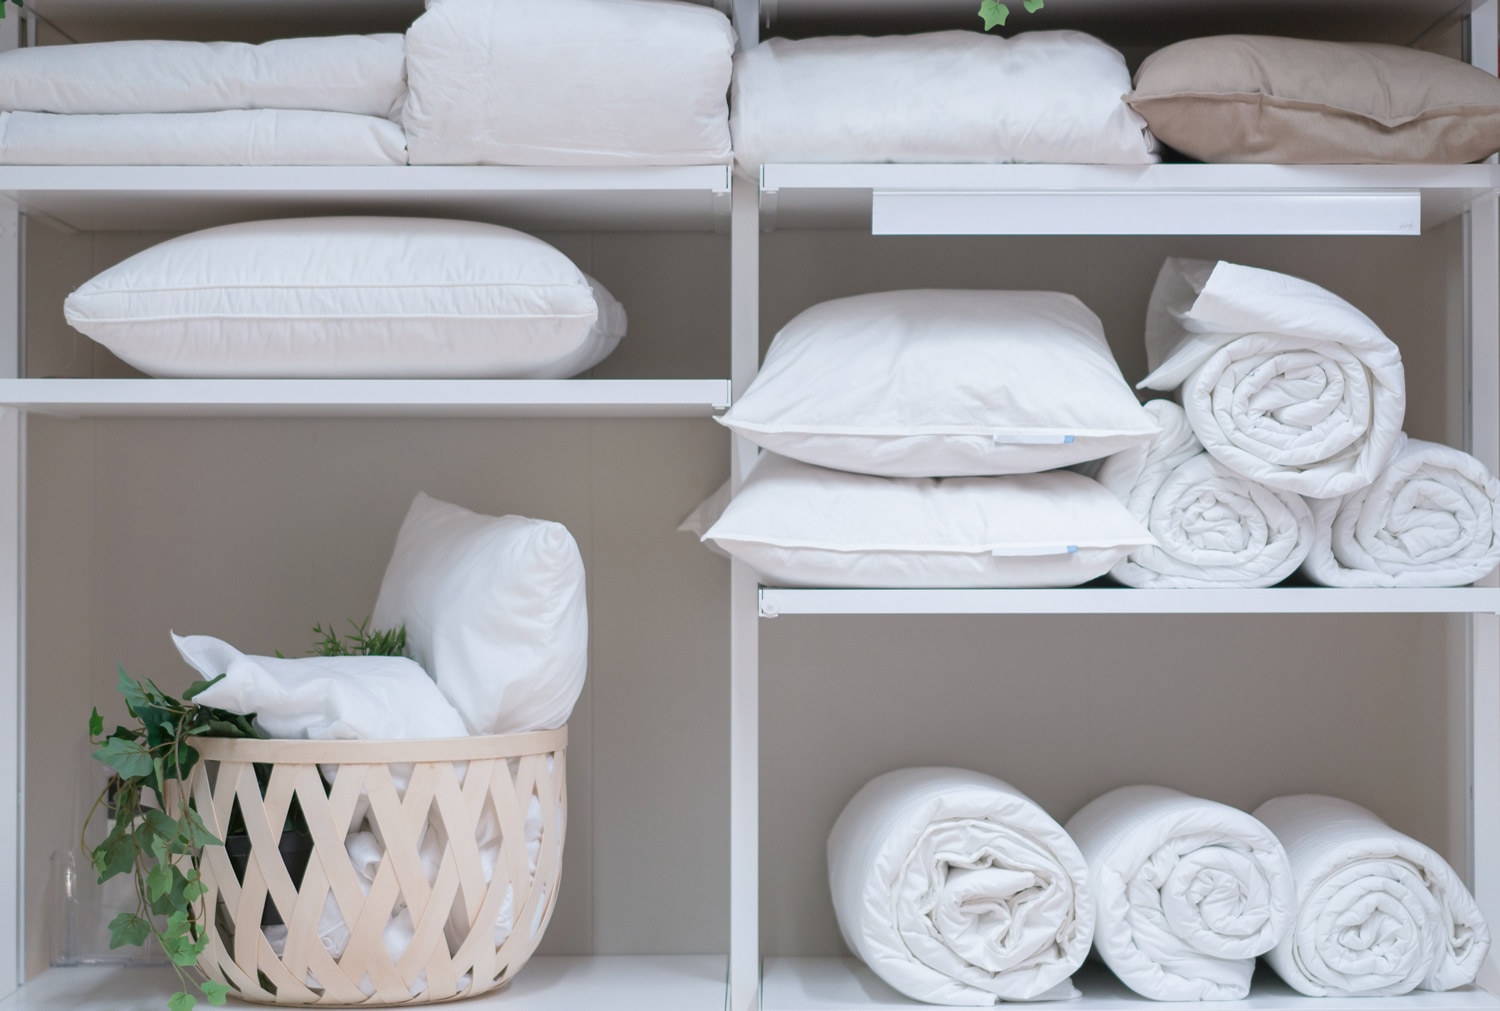 Comment laver des oreillers : Astuces pour bien laver et entretenir ses oreillers